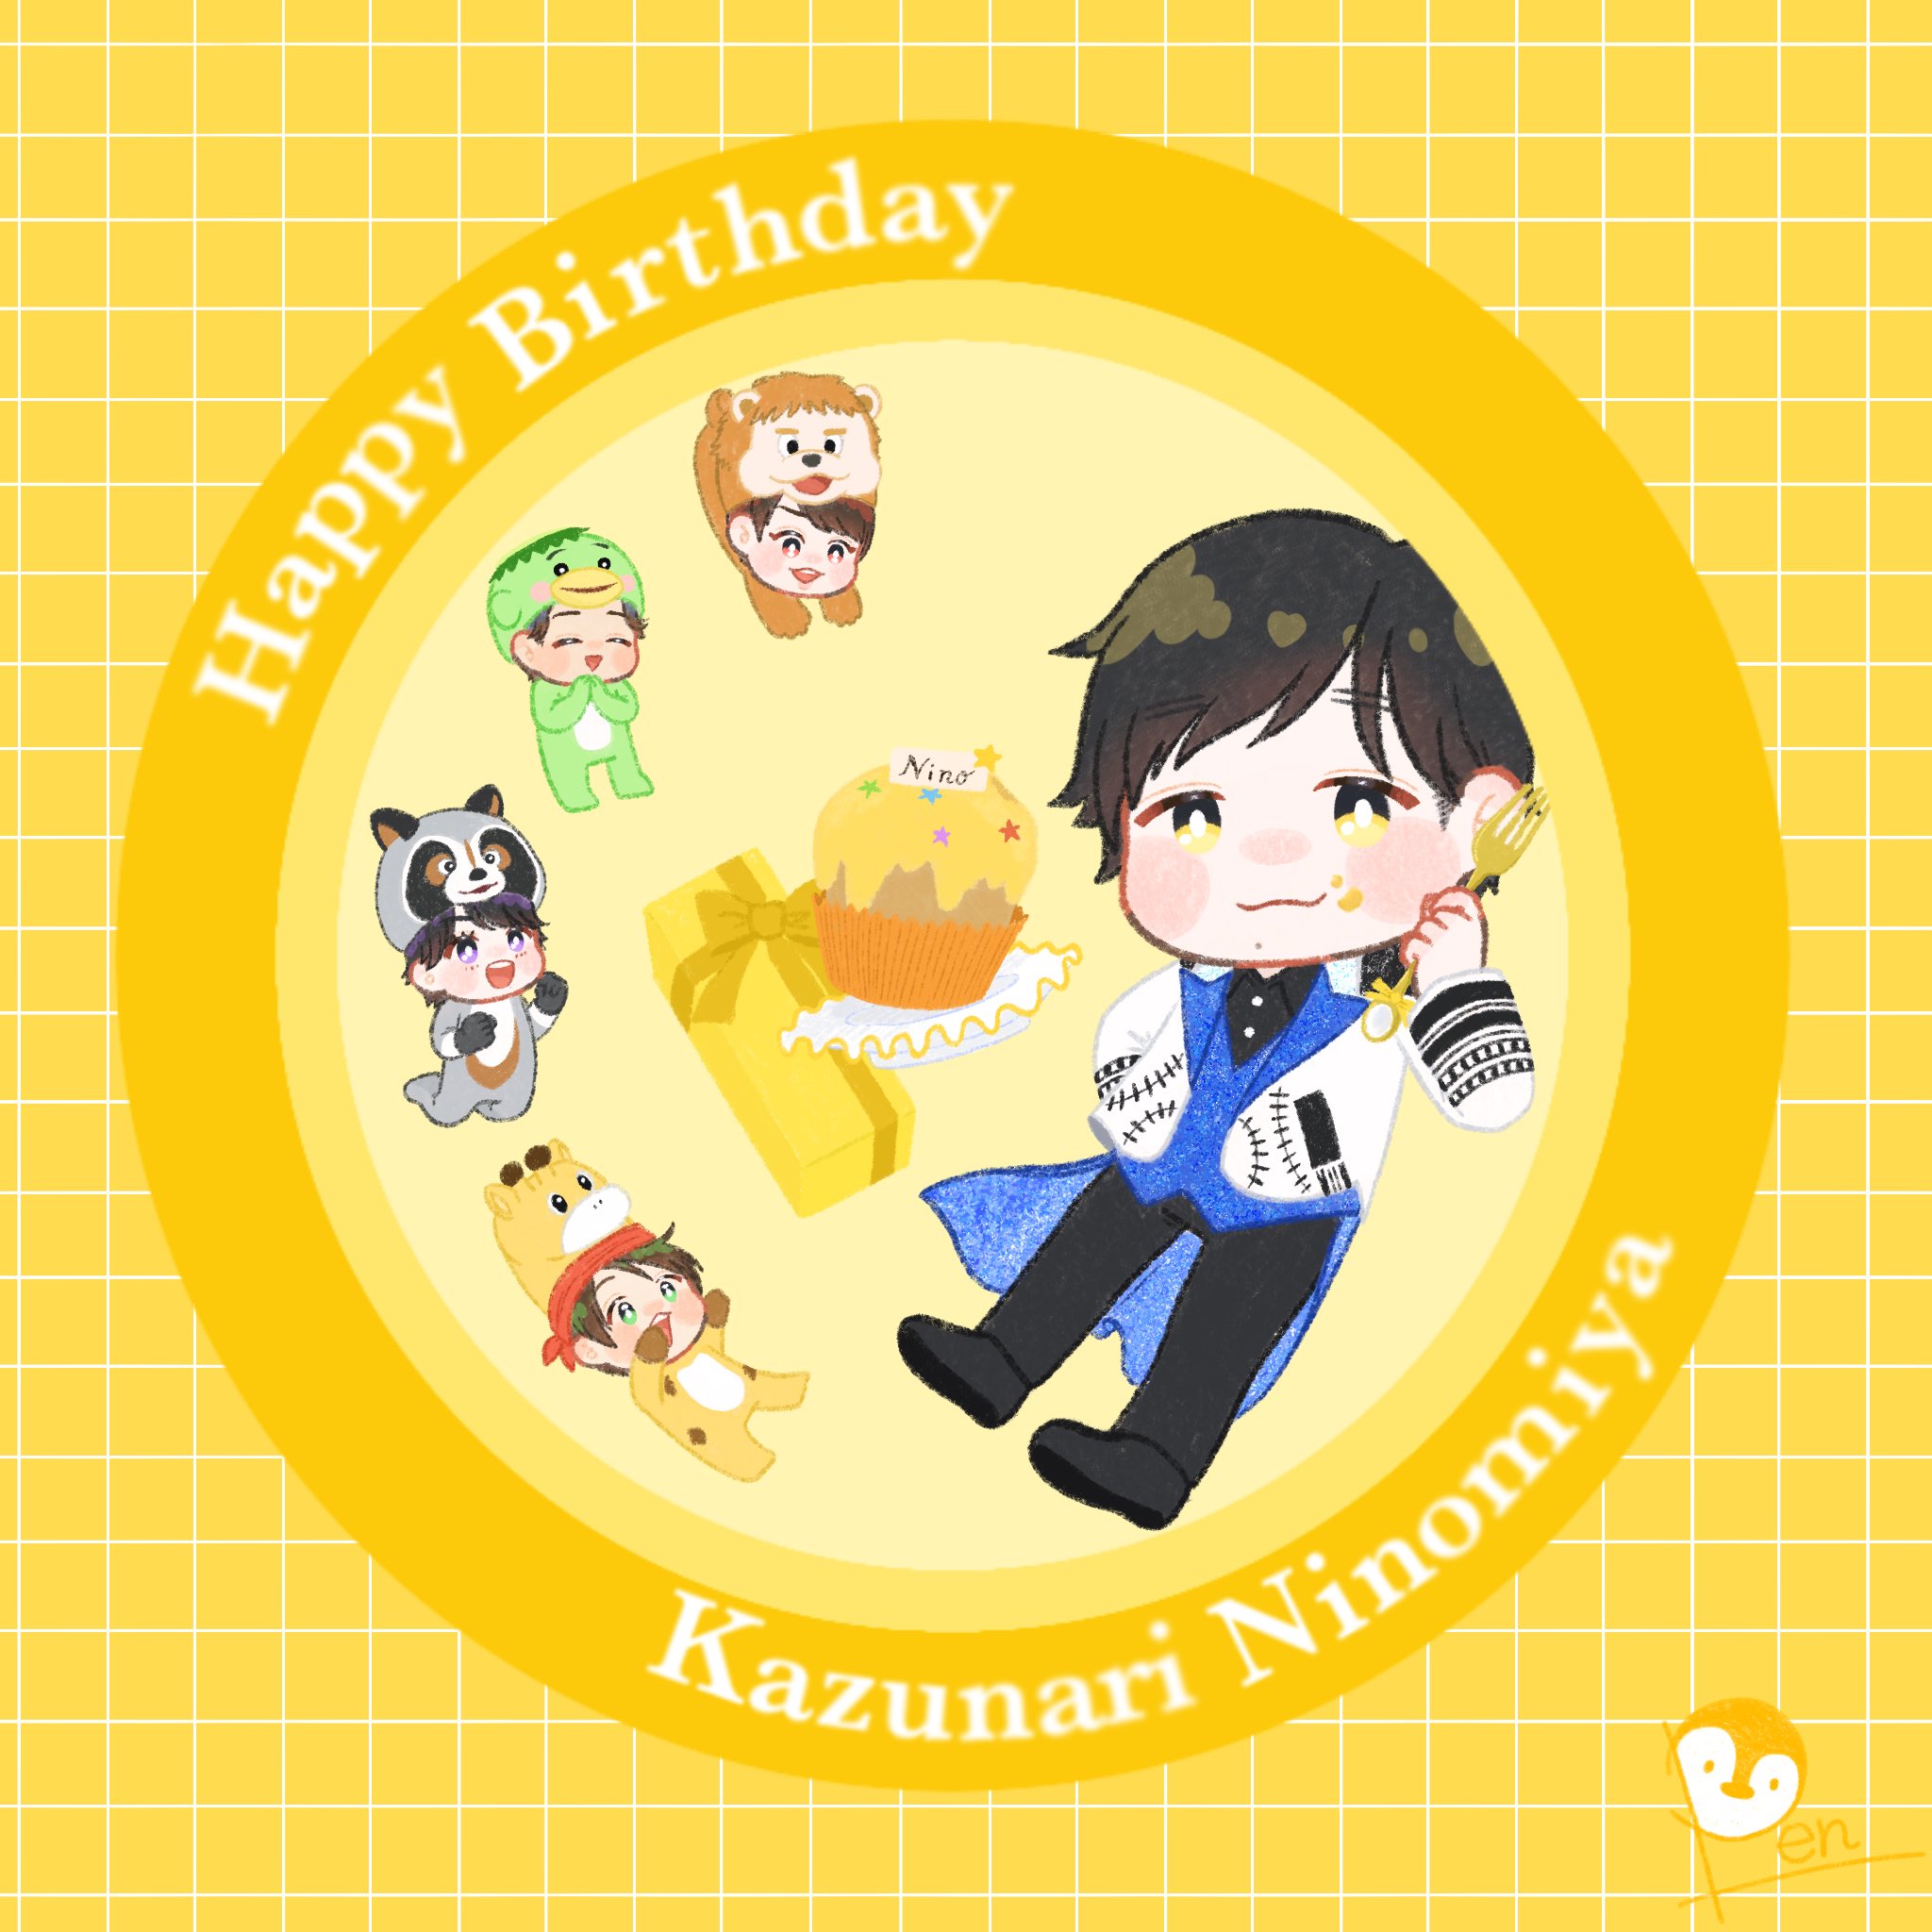 Happy Birthday    !
Kazunari Ninomiya
40              